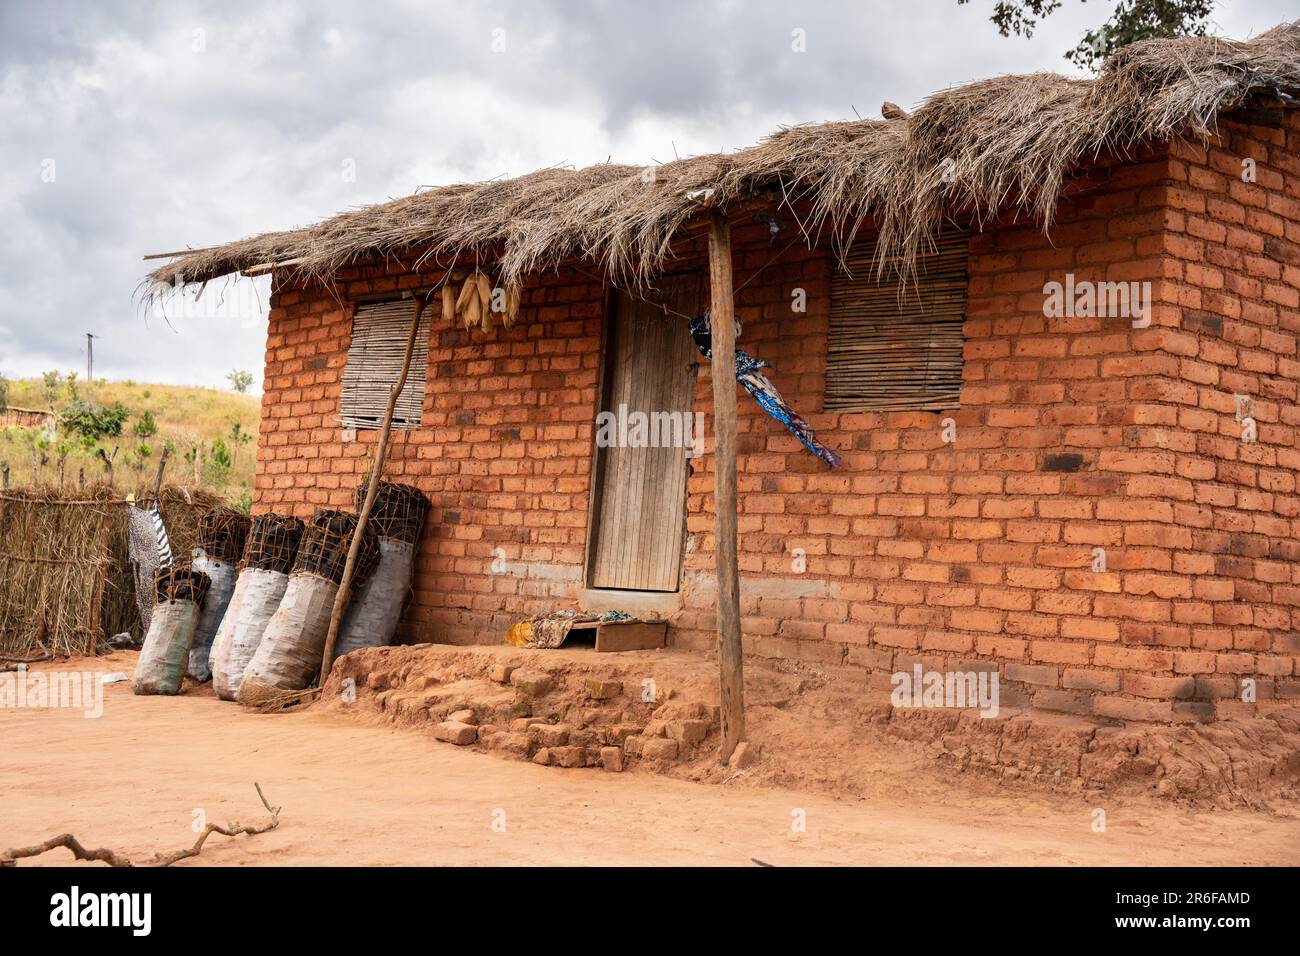 Varios sacos de carbón producido ilegalmente se apilan contra una casa en la zona rural de Malawi. Foto de stock